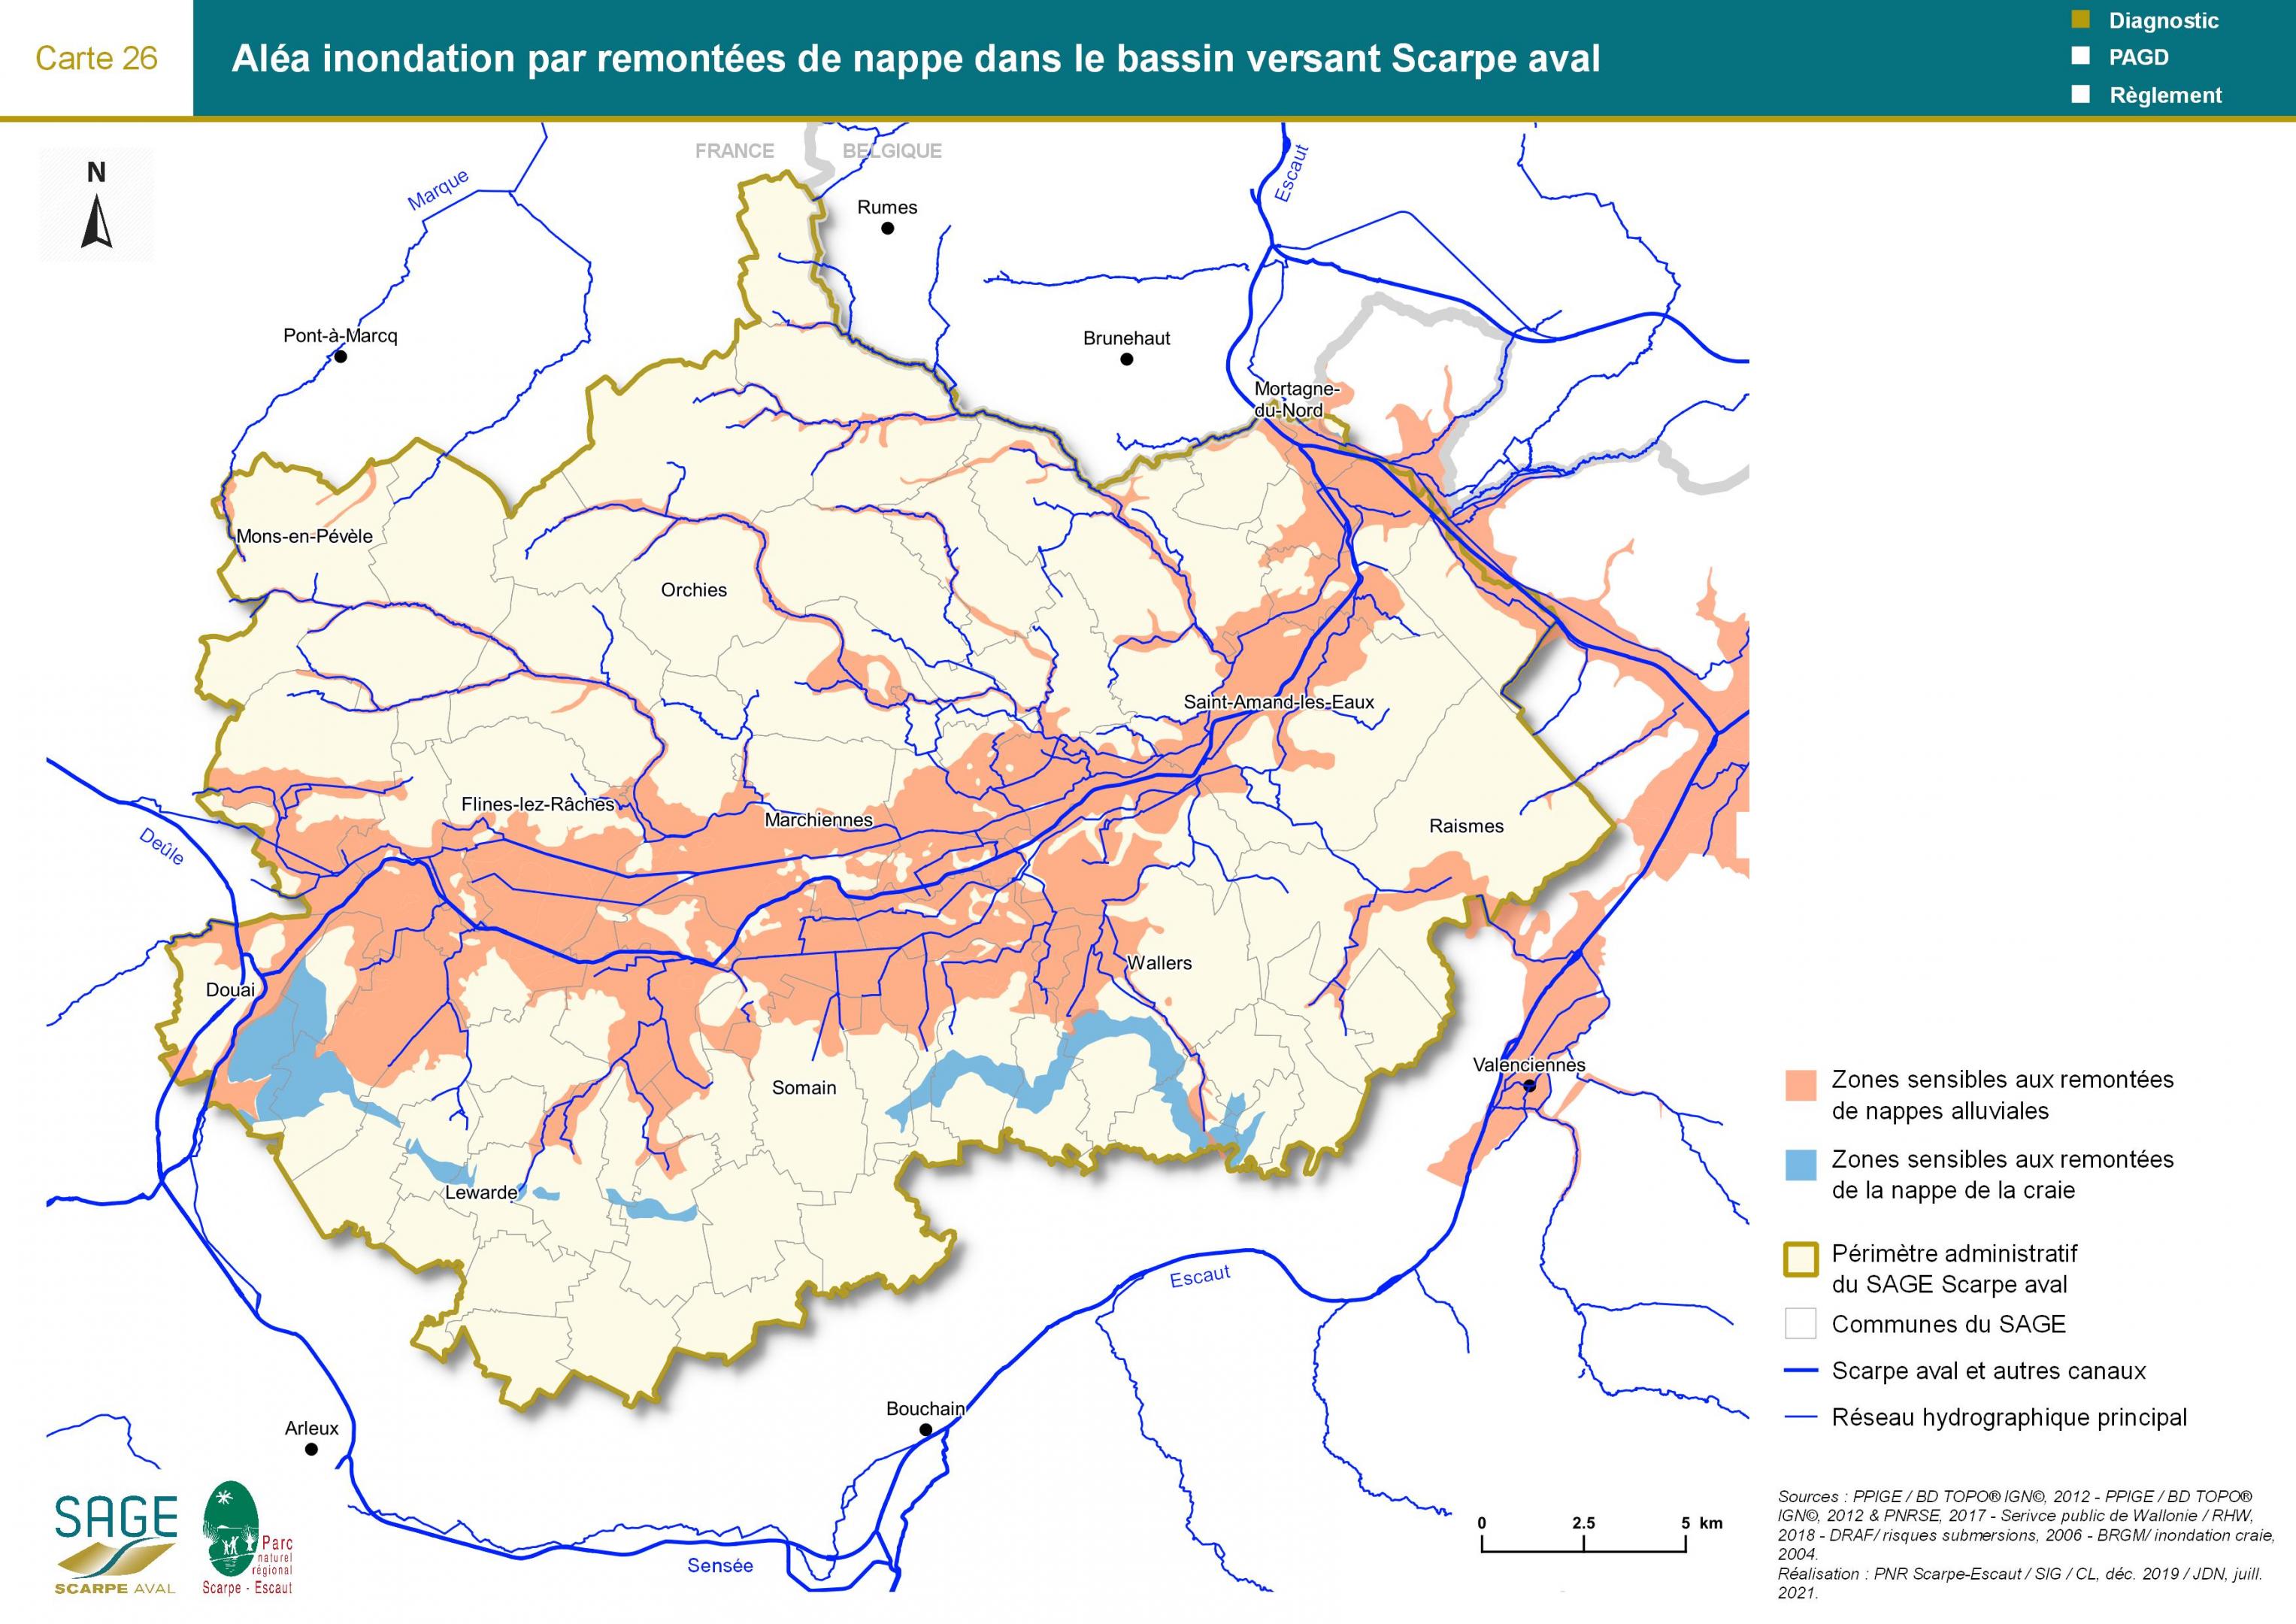 Etat des lieux - Carte 26 : Aléa inondation par remontées de nappe dans le bassin versant Scarpe aval